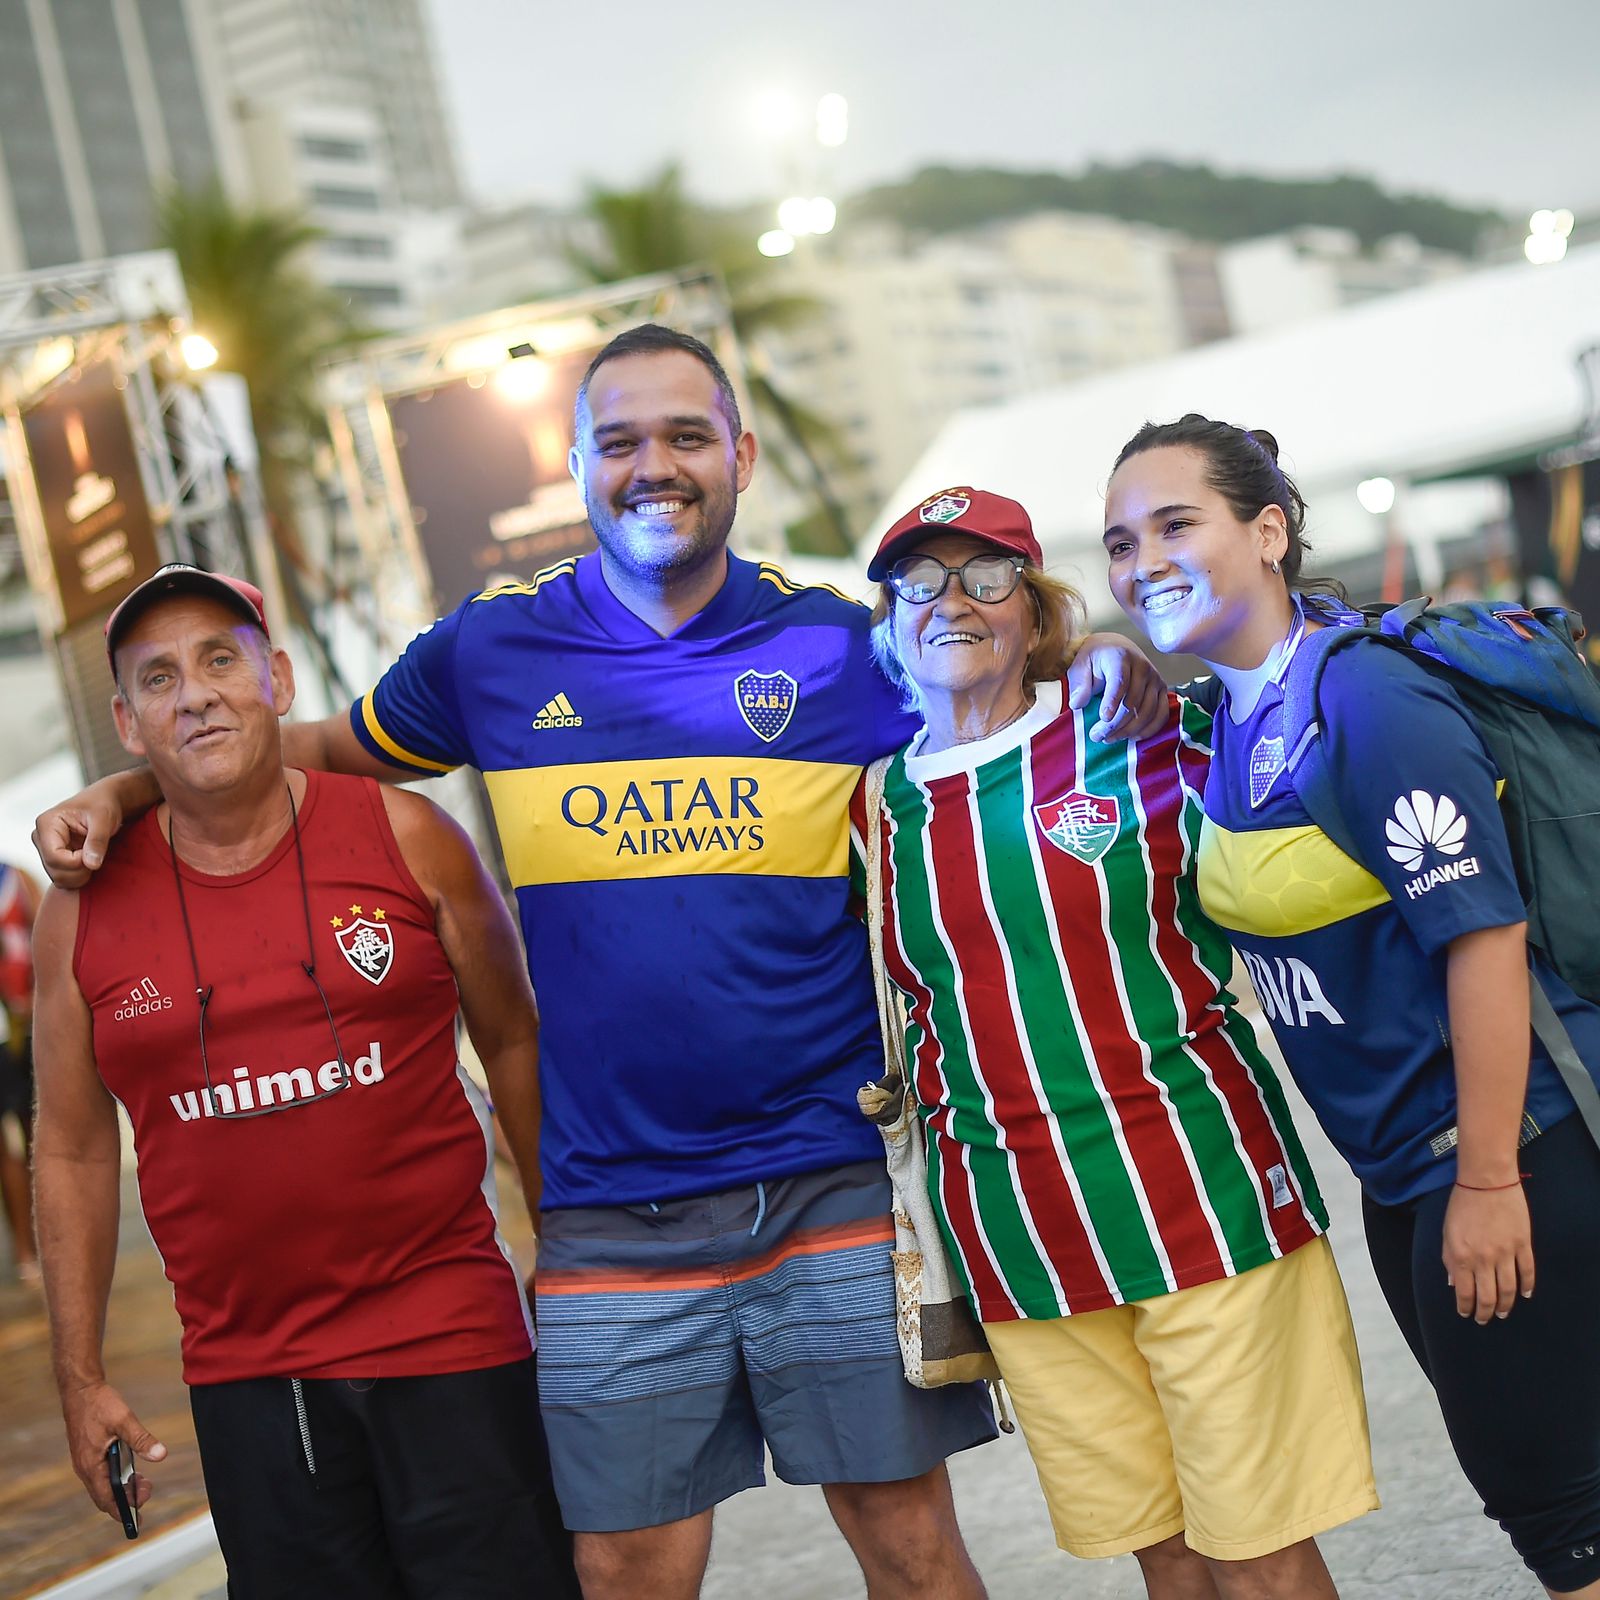 Vídeo: Conmebol inicia Fan Zone na praia de Copacabana no Rio de Janeiro